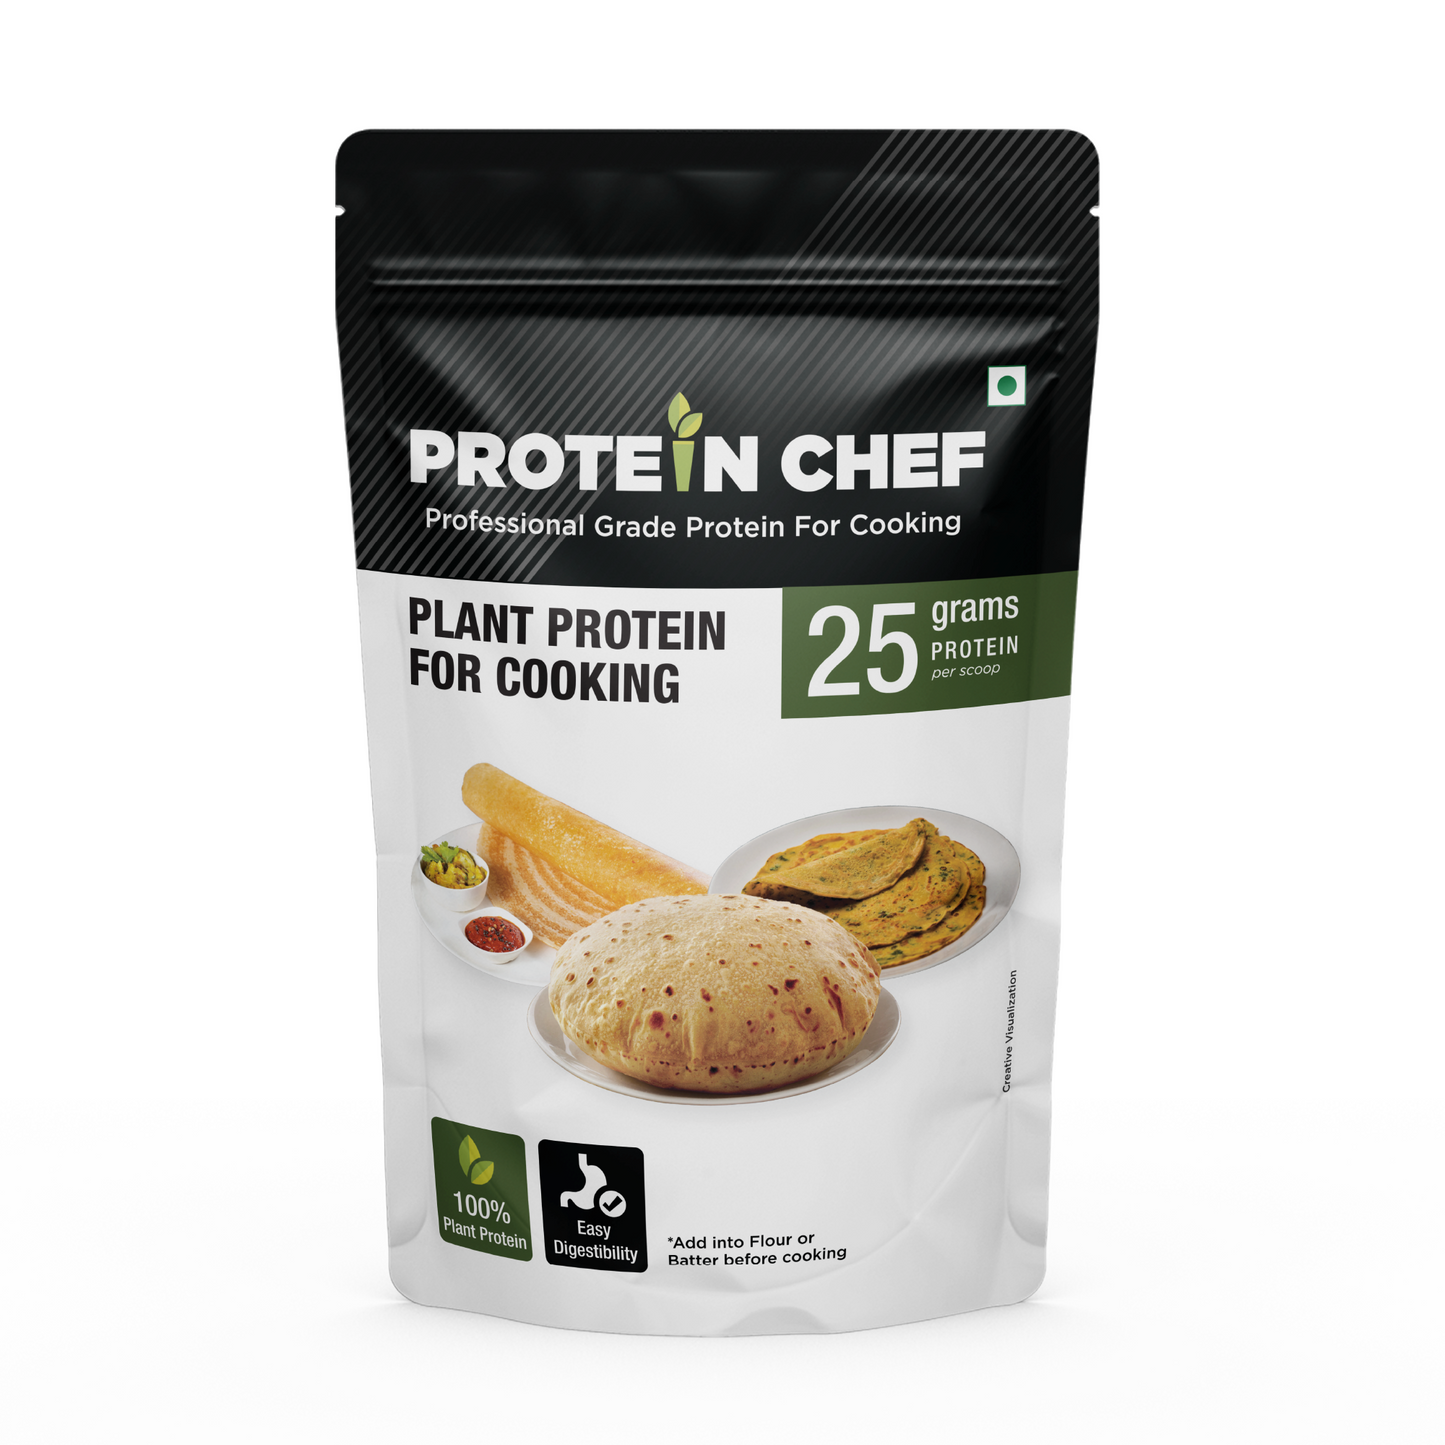 Protein Chef Pro + Protein Mix for Atta